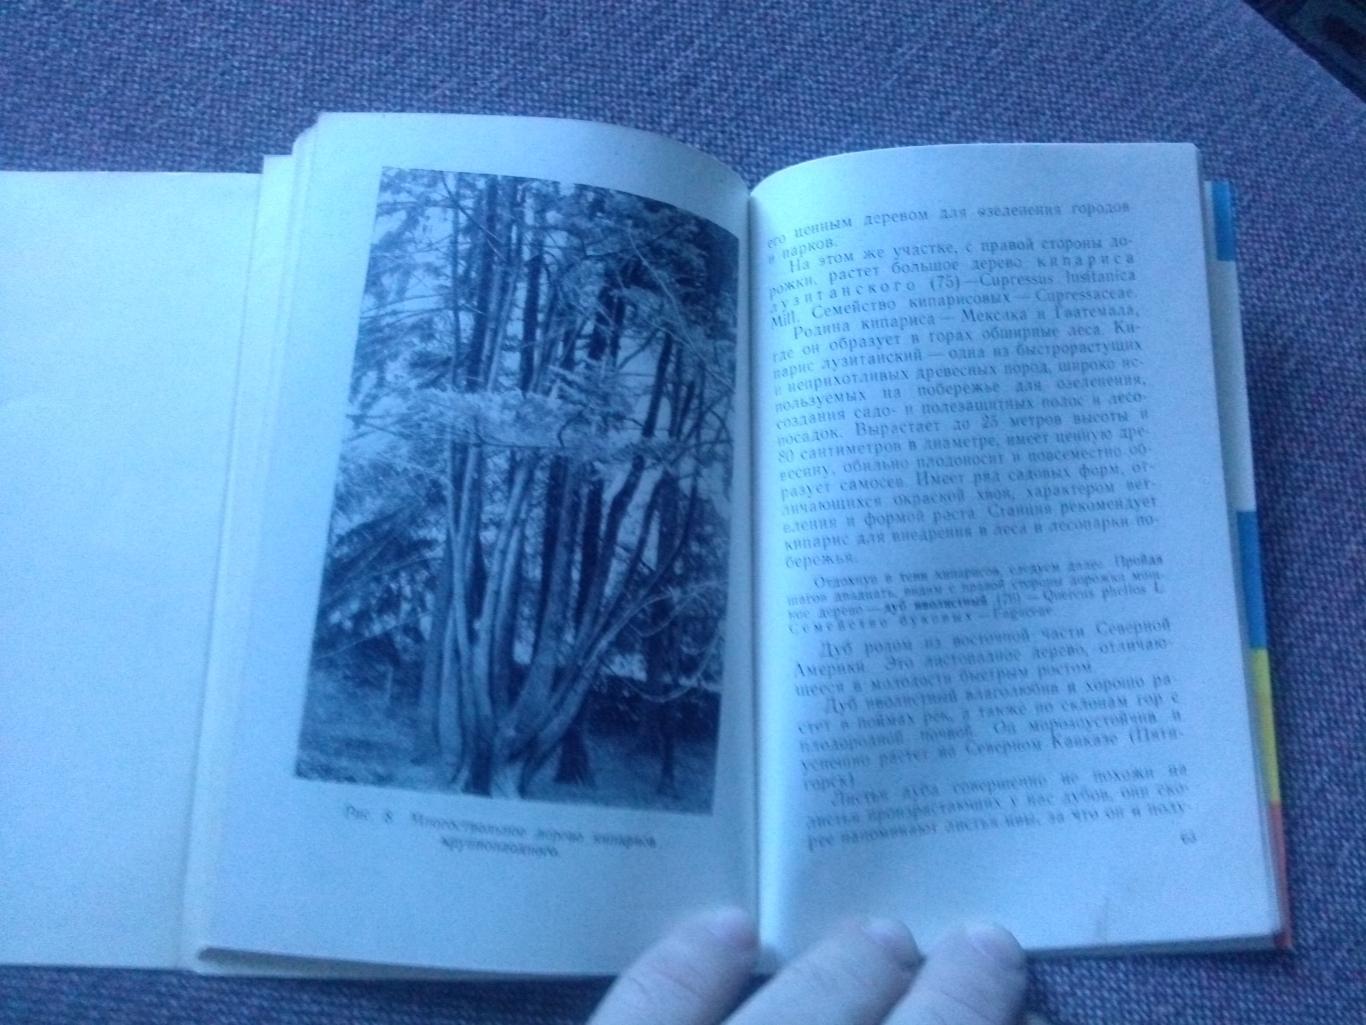 Путеводитель : Сочинский дендрарий 1962 г. (суперобложка) Сочи флора Кавказ 5